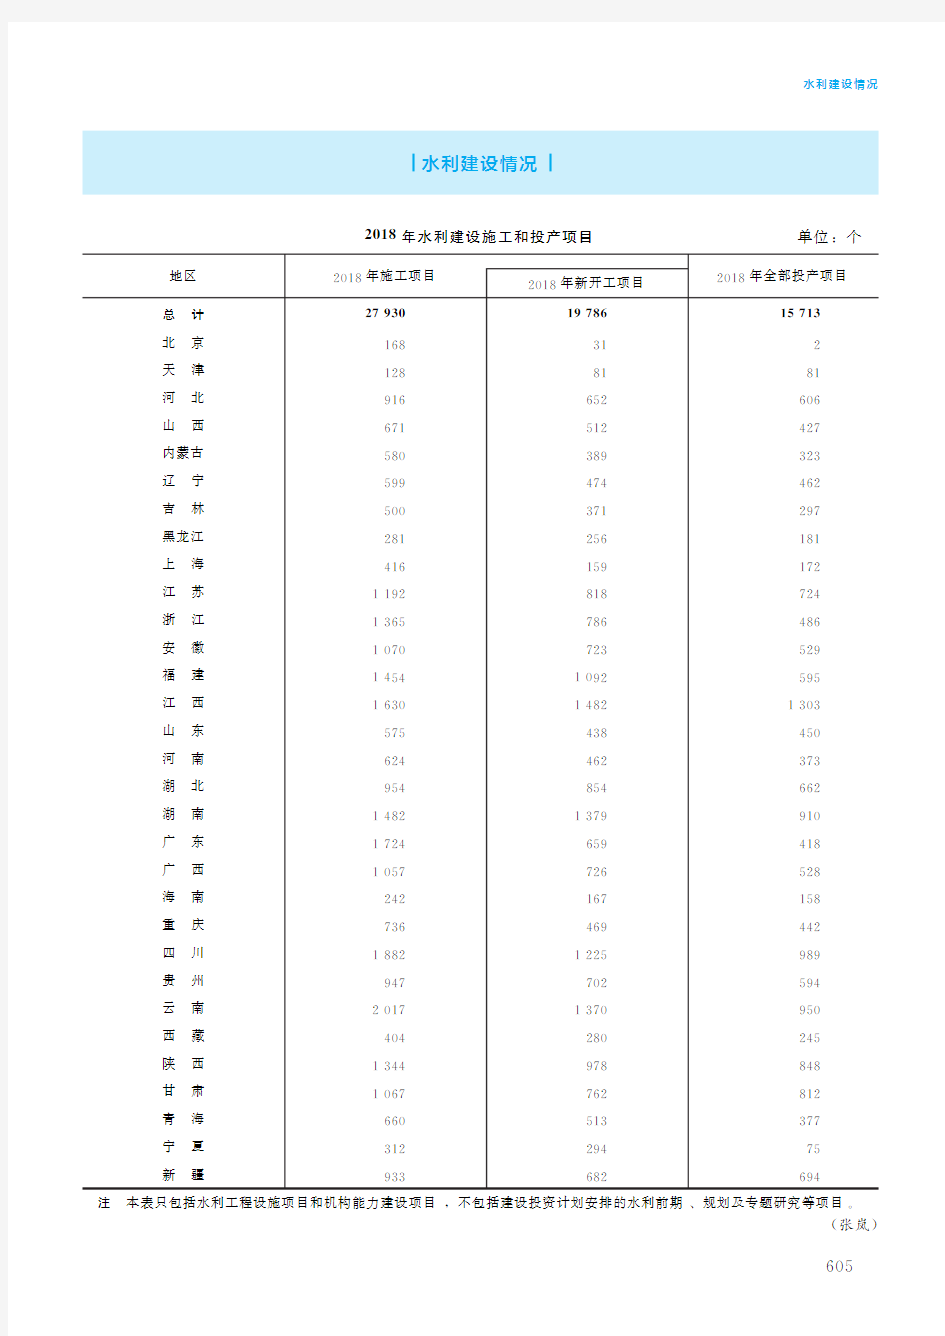 中国水利年鉴2019_十九、水利统计-水利建设情况